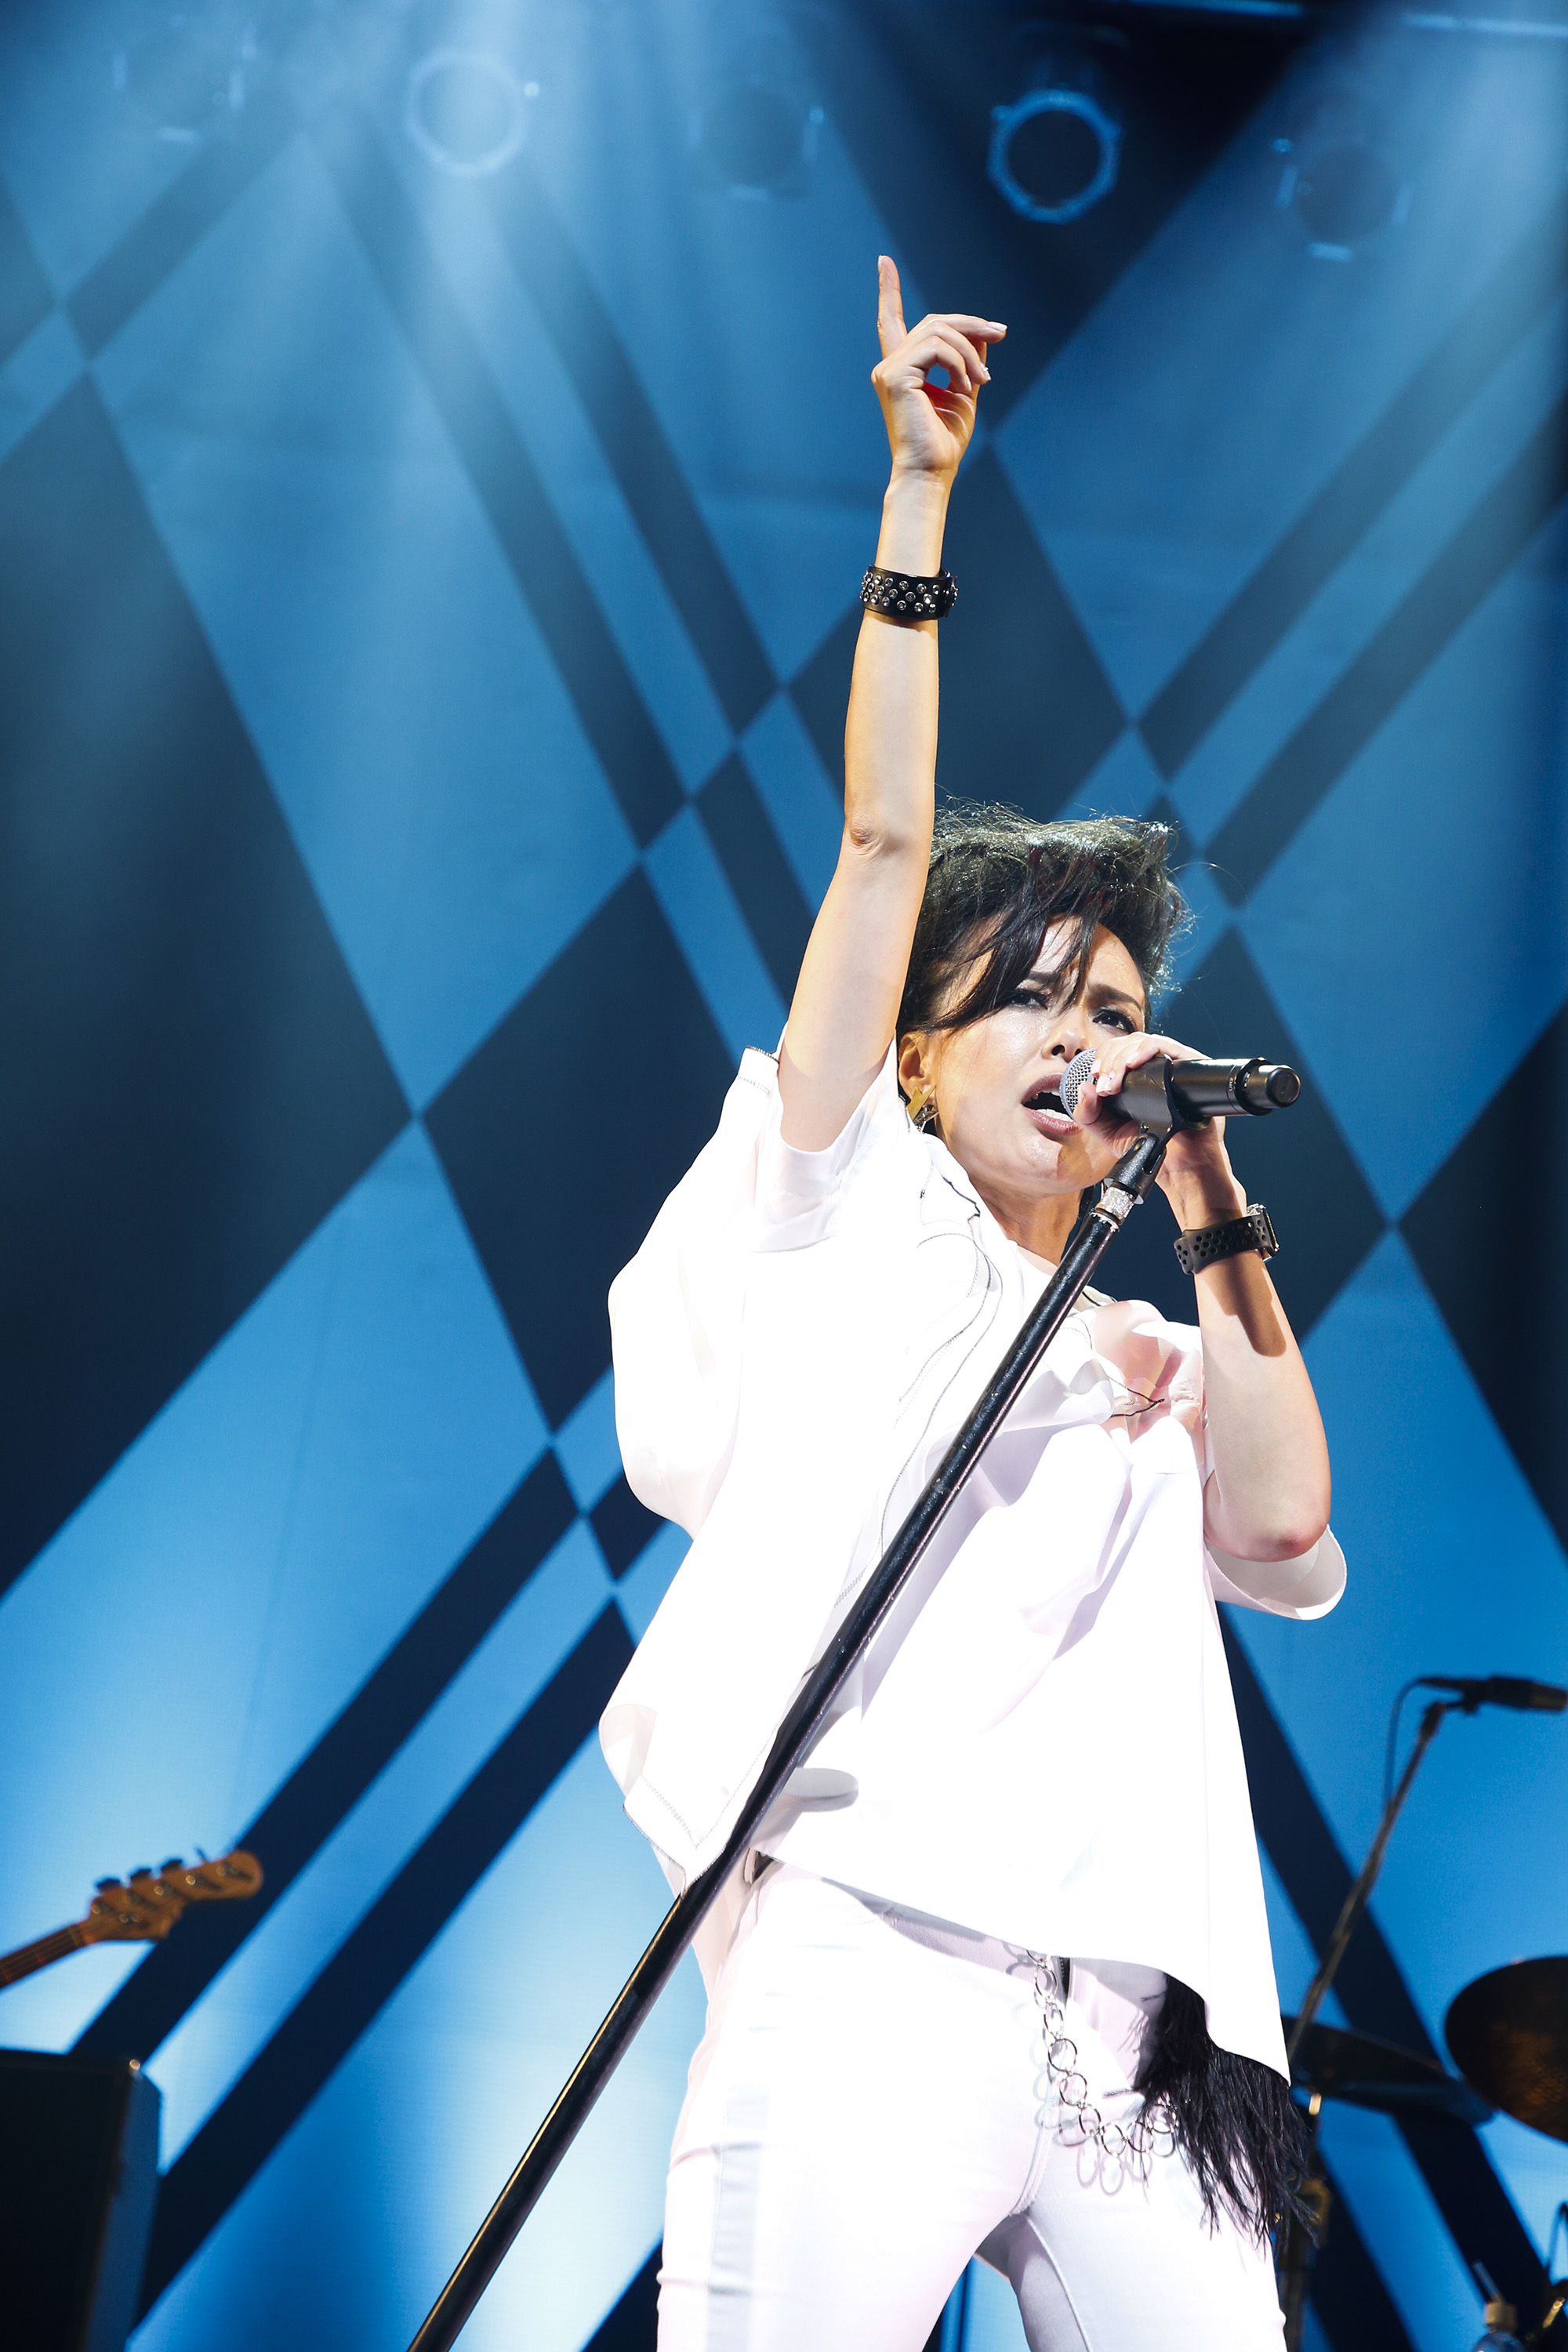 ロックシンガー相川七瀬、7月7日7時7分7秒に初の無観客ライブを開催